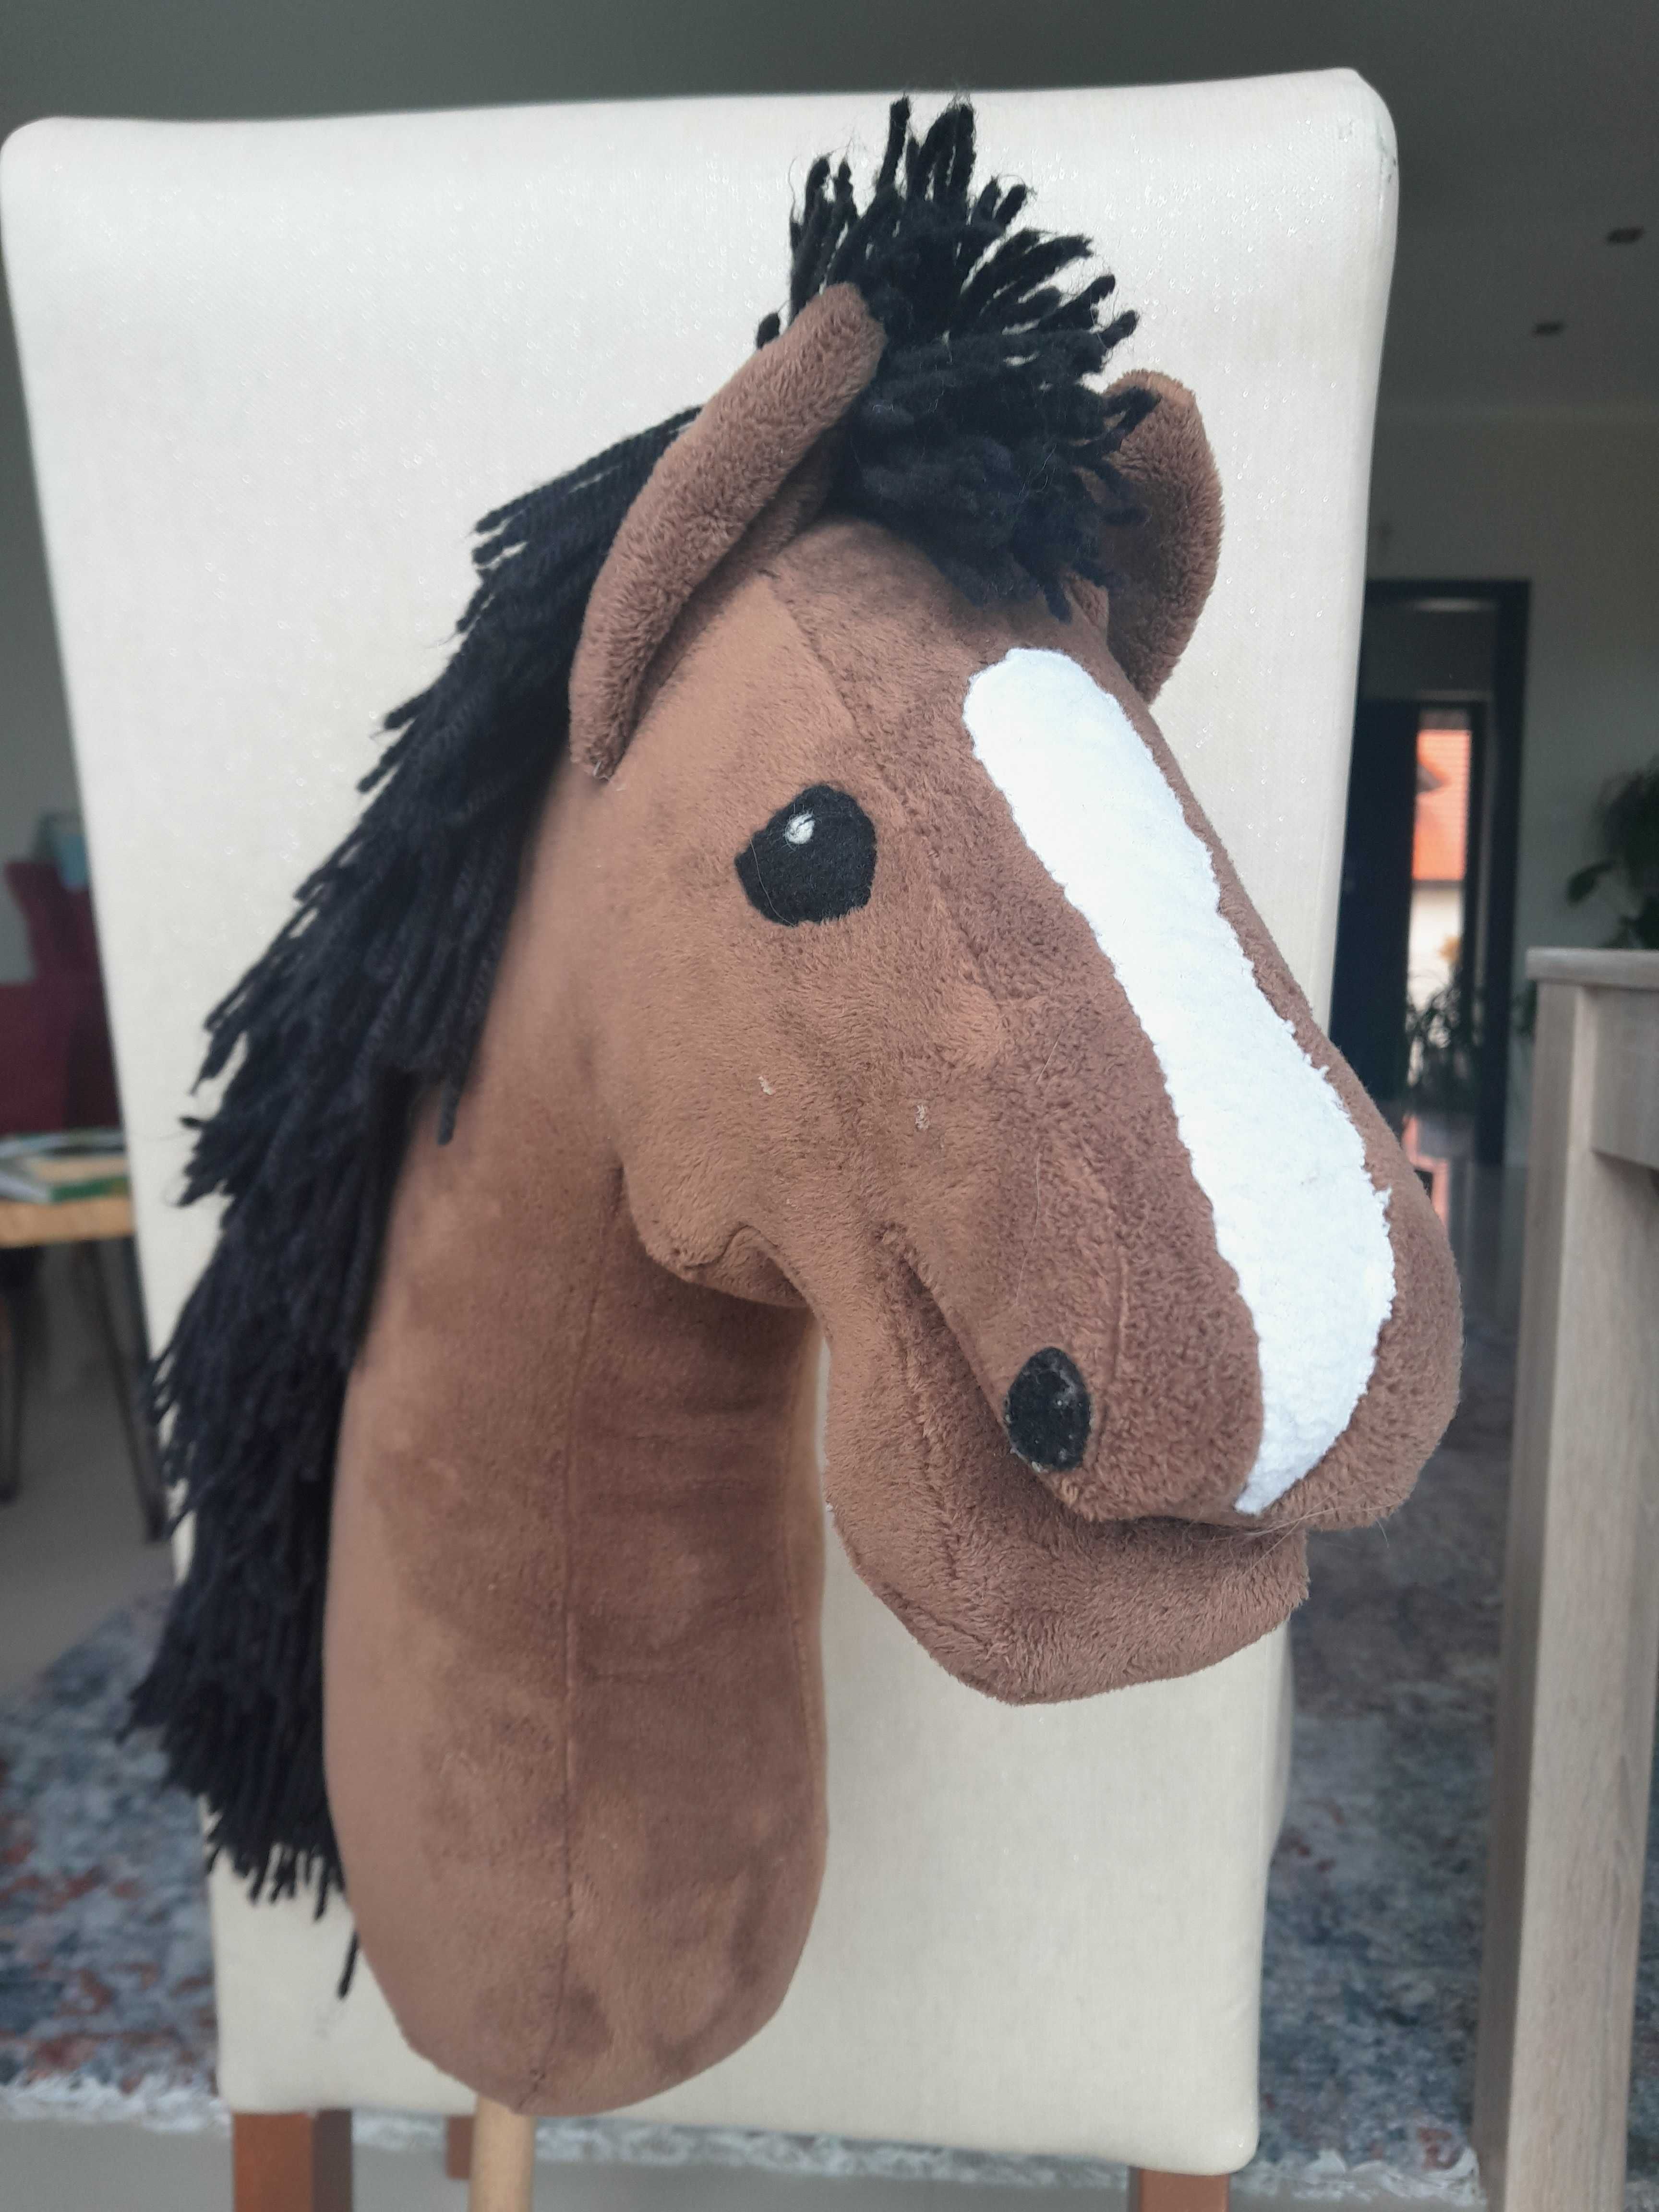 Hobby Horse A3 brązowy - szyty na indywidualne zamówienie